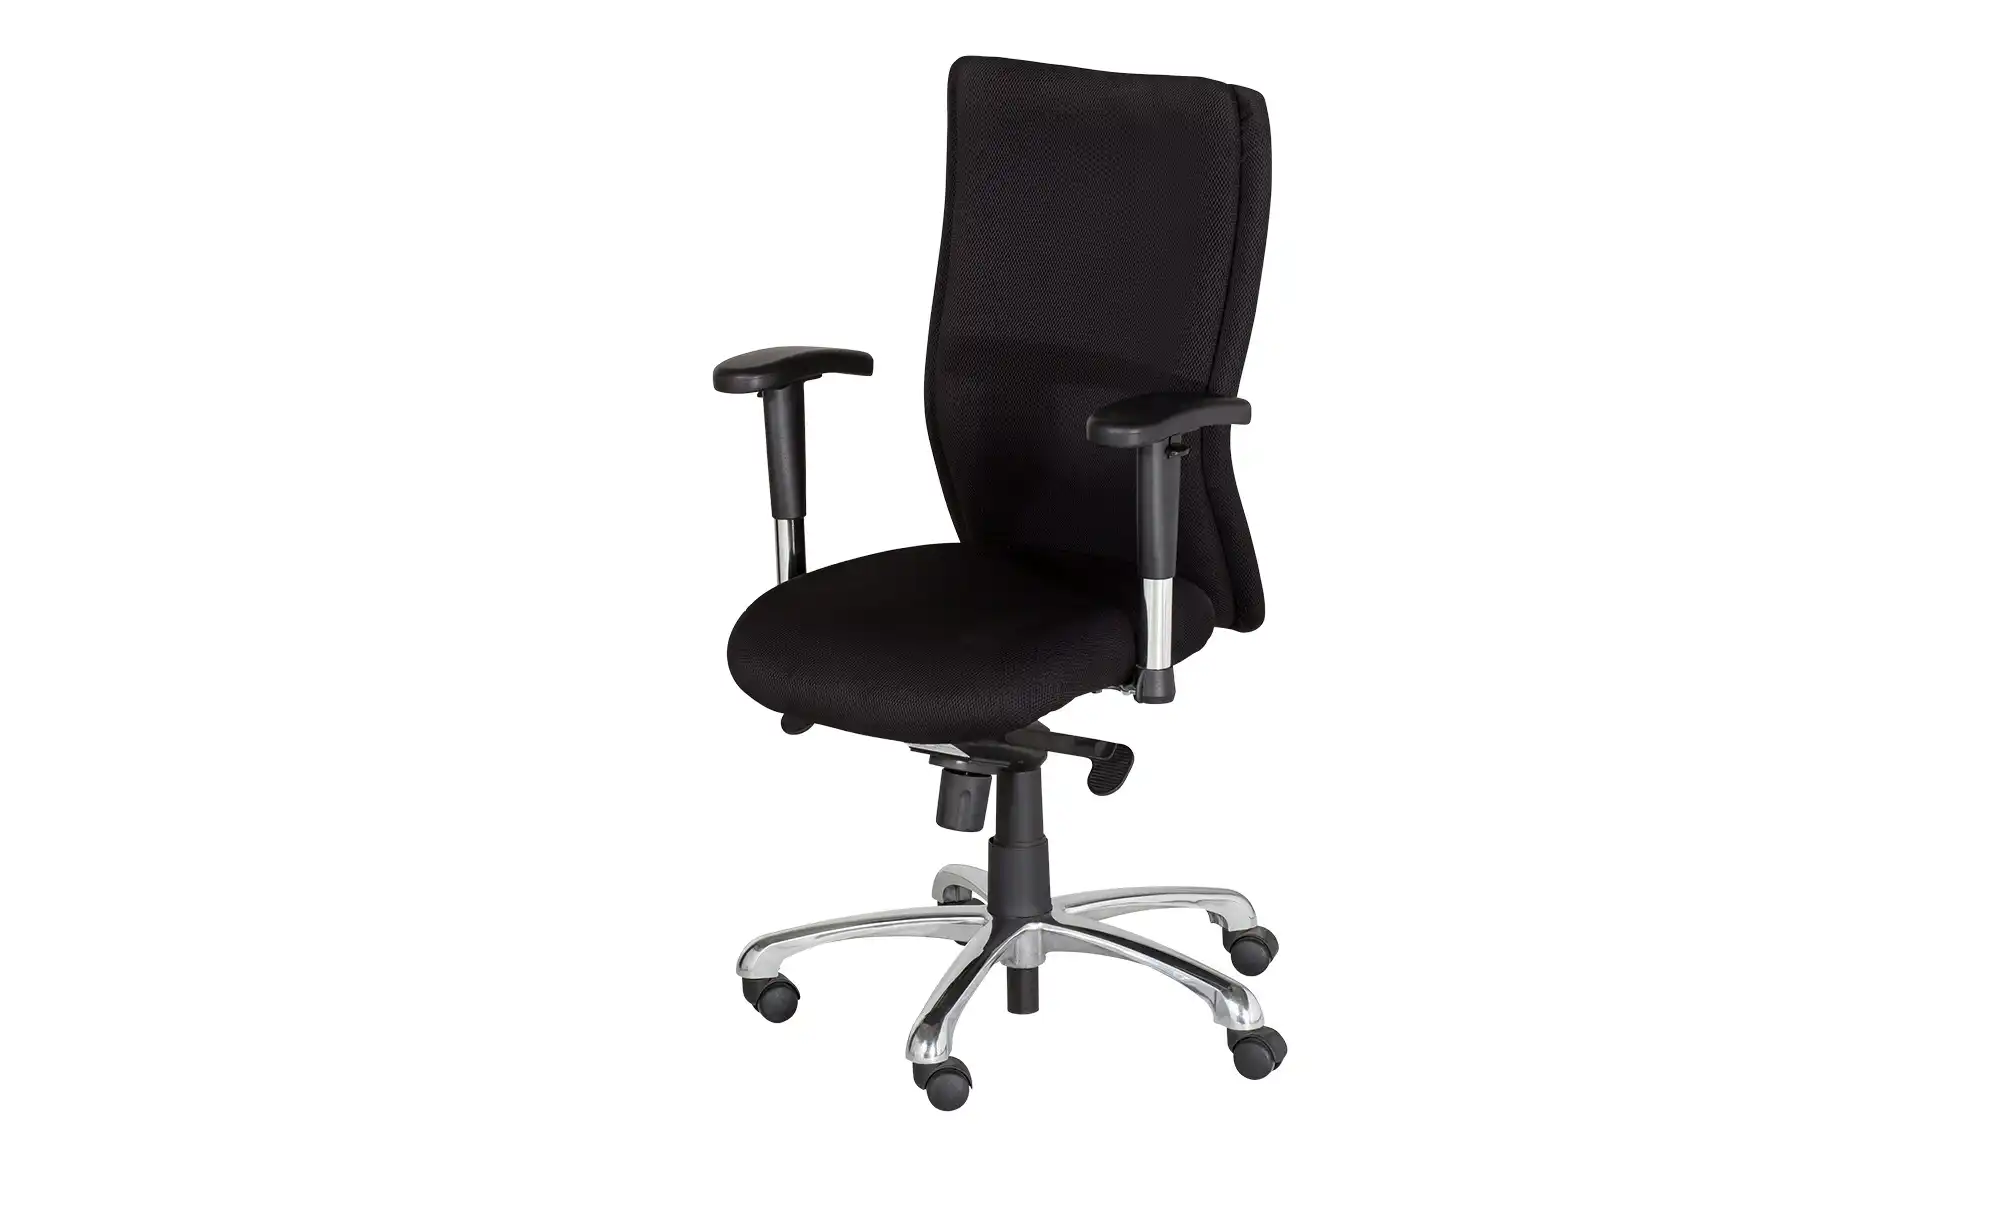 Bürodrehstuhl mit Armlehnen Spree ¦ schwarz Stühle Bürostühle Drehstühle Höffner  - Onlineshop Möbel Höffner